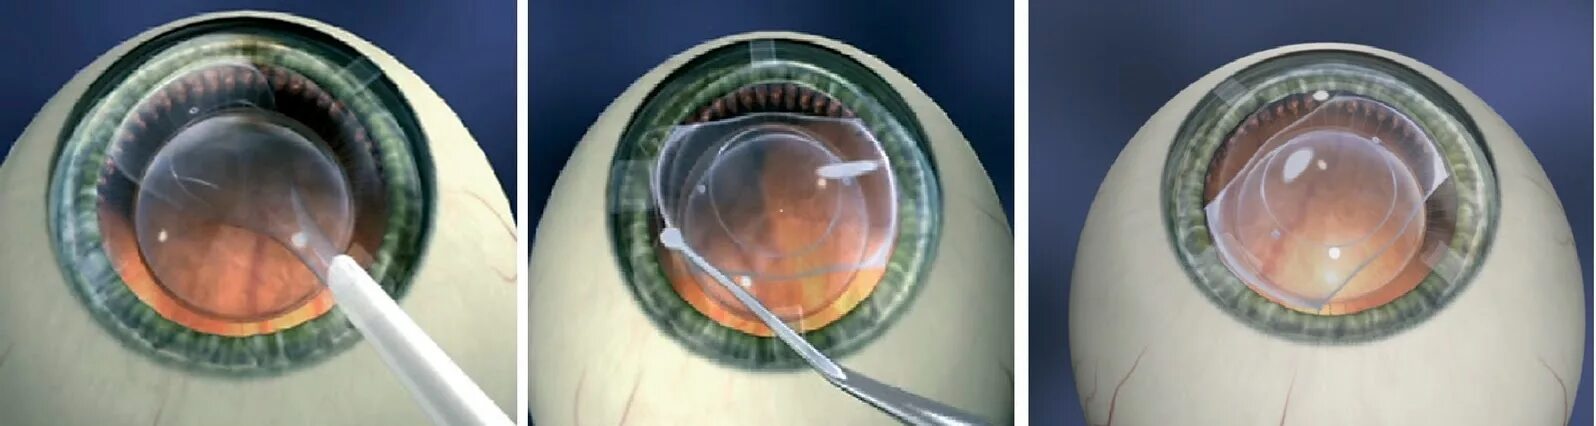 Операция катаракта замена хрусталика отзывы. Имплантация факичных интраокулярных линз. Факичные интраокулярные линзы (ИОЛ)..